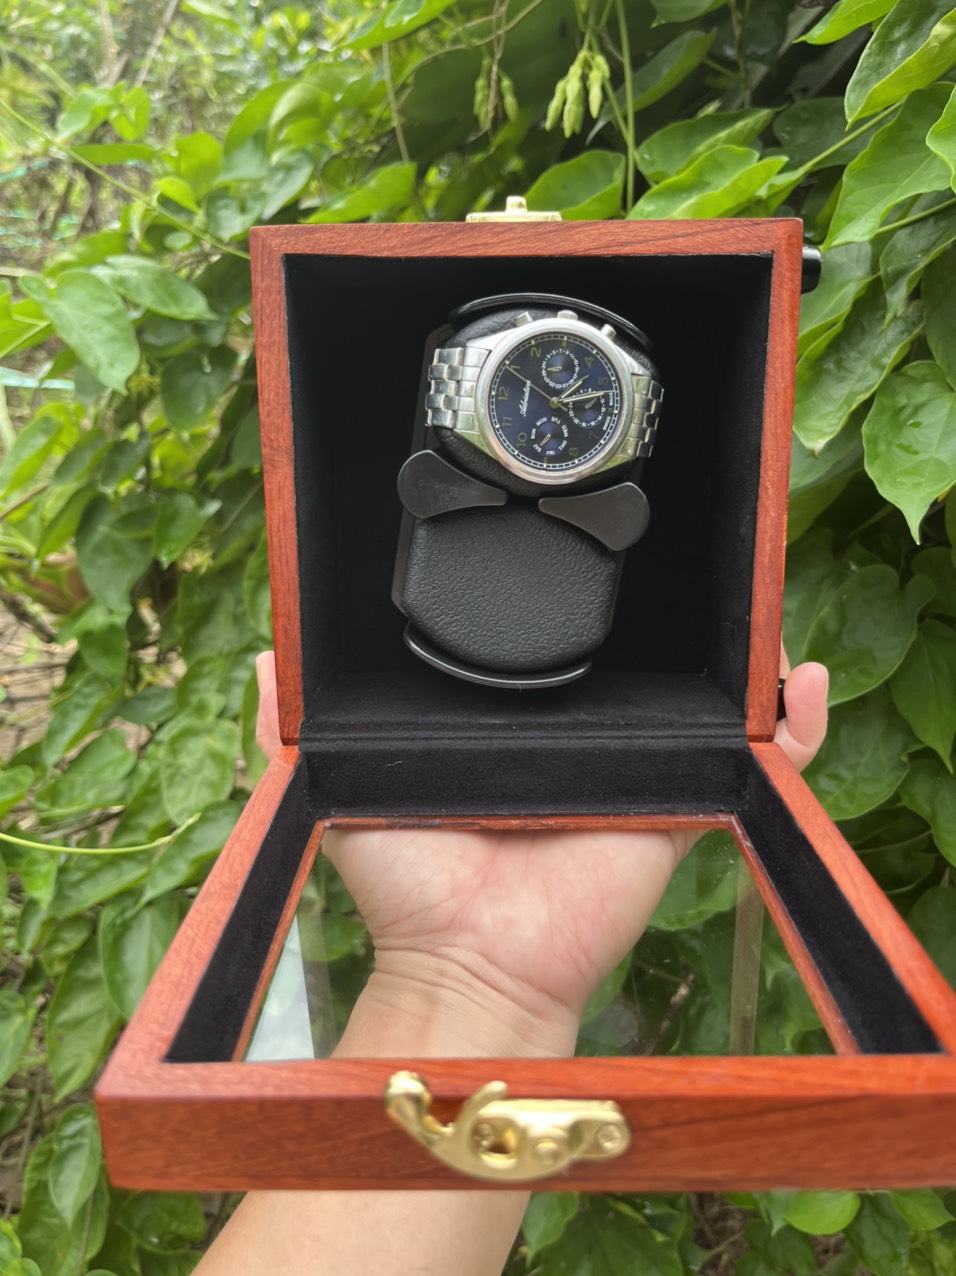 Gỗ Gõ Đỏ,Hộp 2 đồng hồ, 5 chế độ xoay, Made in Việt Nam Hộp xoay,Hộp Lắc, Hộp tích cót đồng hồ cơ Winder Watch